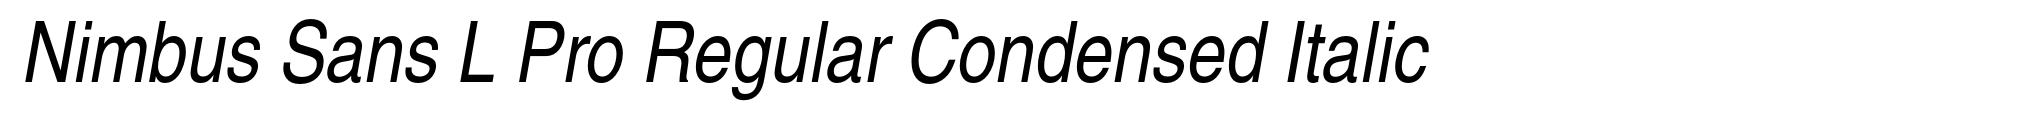 Nimbus Sans L Pro Regular Condensed Italic image